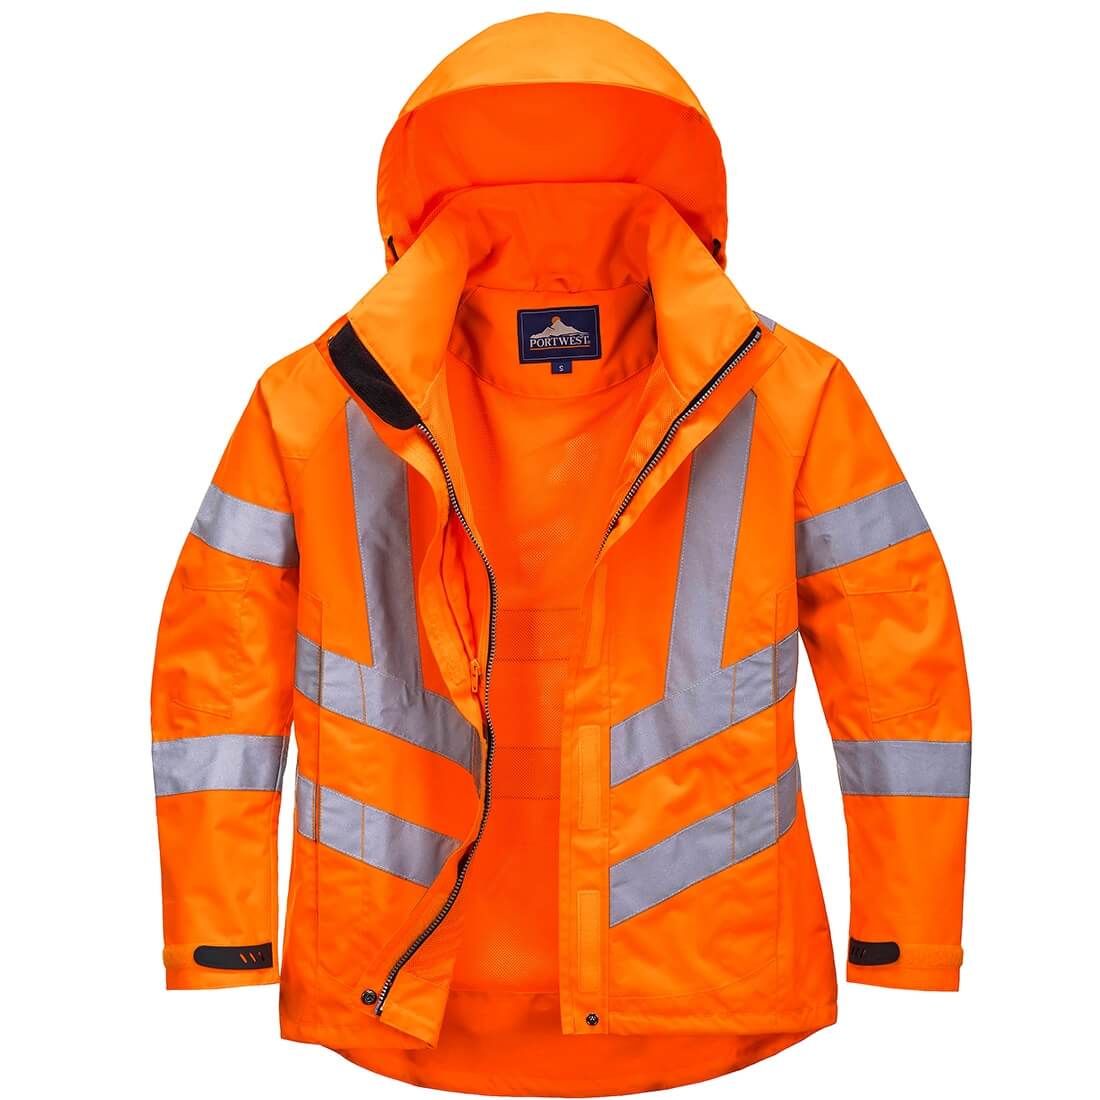 Ladies Hi-Vis Breathable Jacket - Safetywear